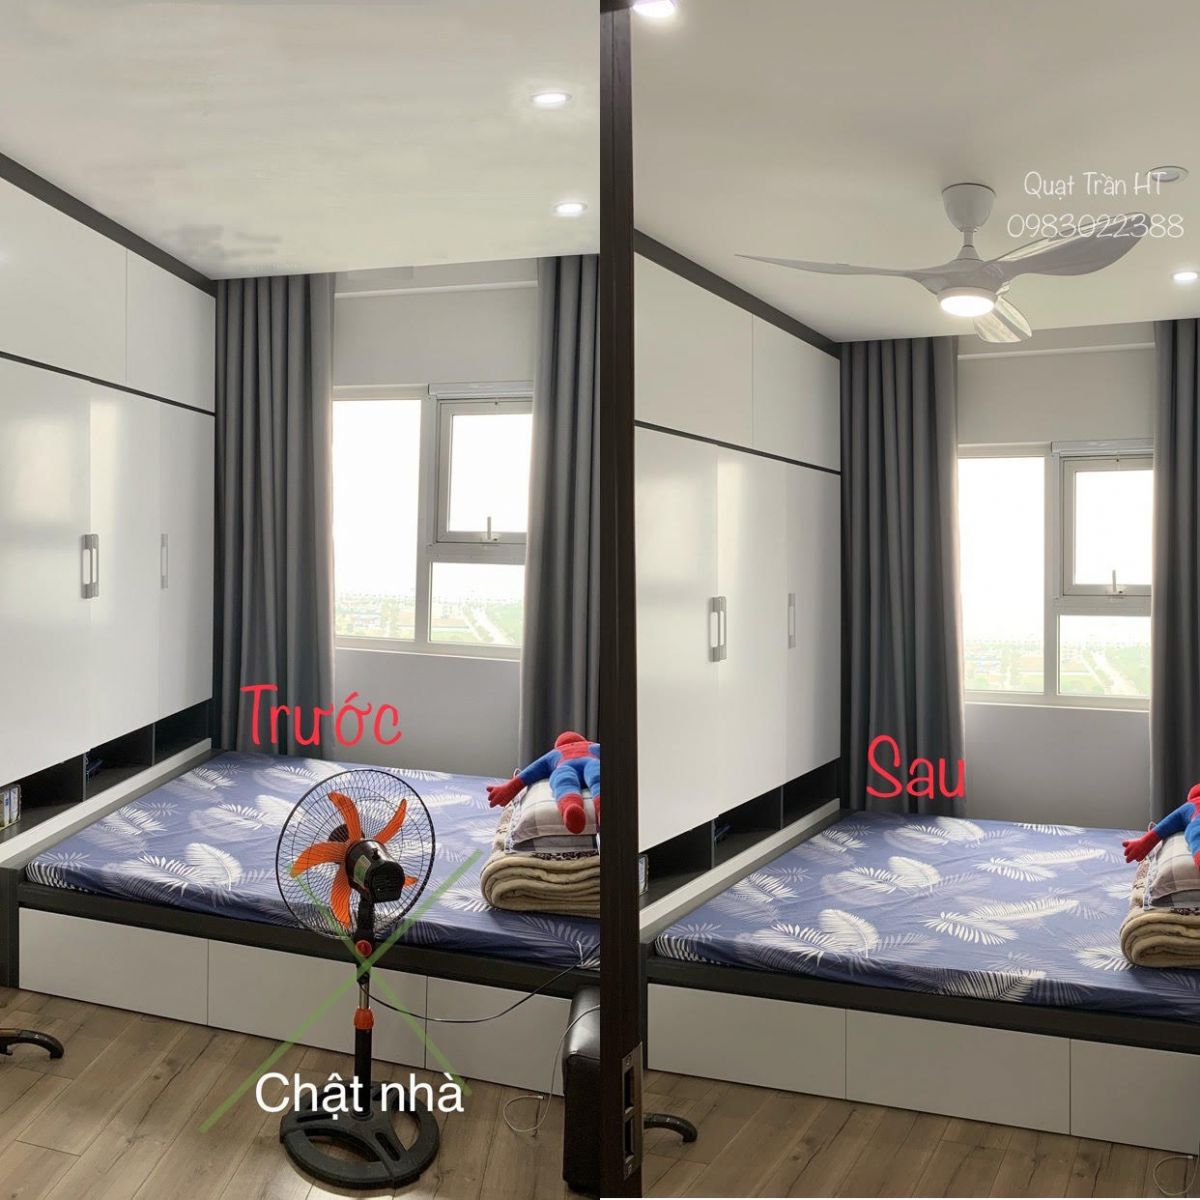 Ảnh minh họa hiệu quả dùng quạt trần chung cư làm mặt sàn nhà rộng hơn, trước và sau khi lắp quạt trần chung cư